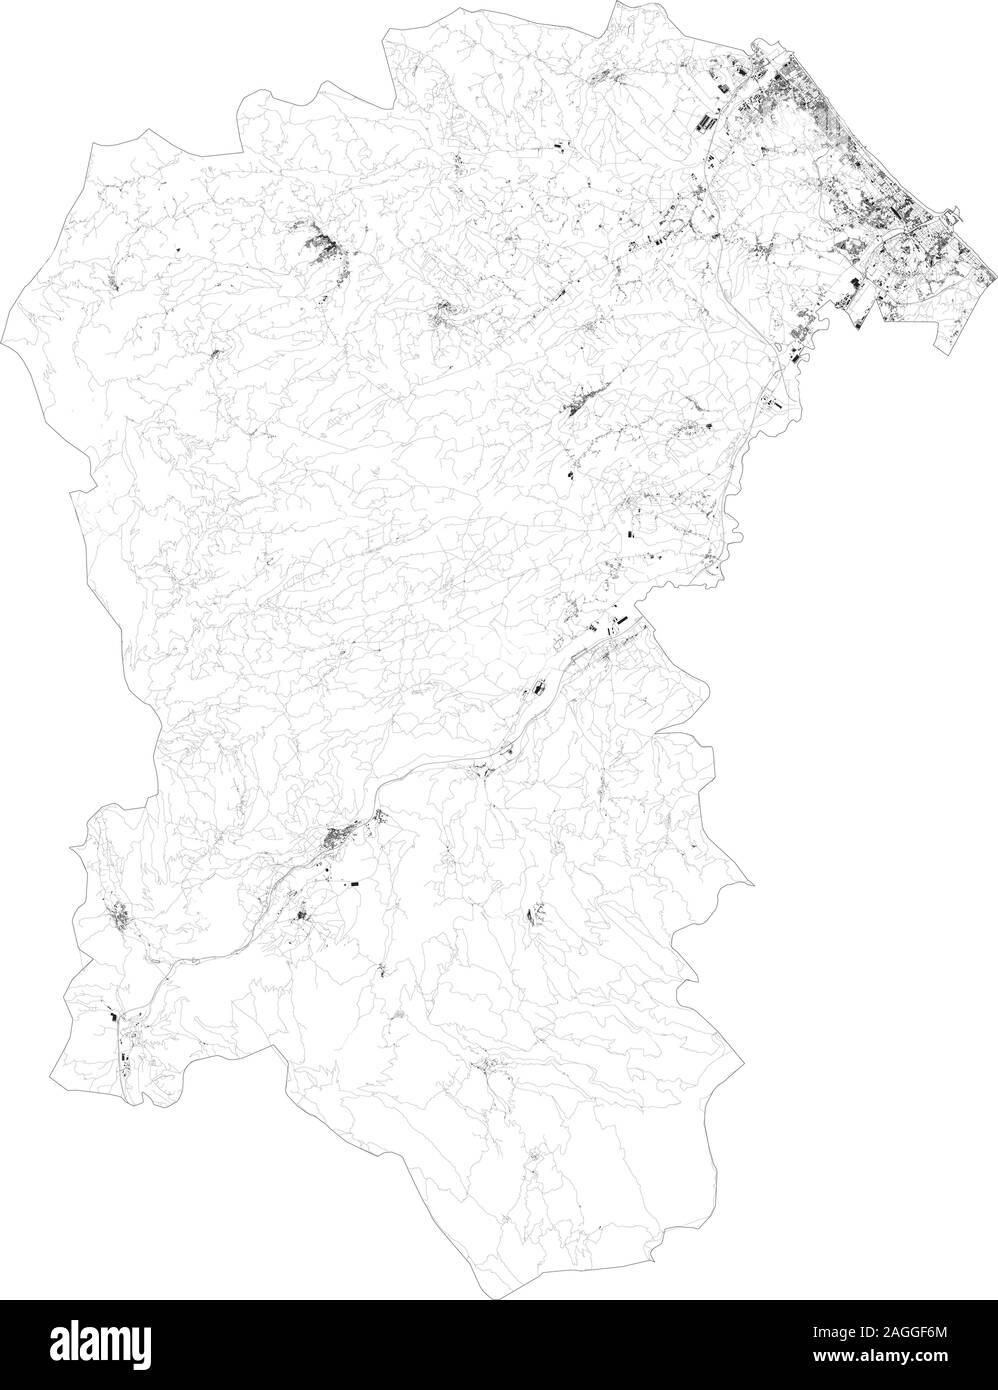 Sat-Karte der Provinz Pescara, Städte und Straßen, Gebäude und Straßen der Umgebung. Region Abruzzen, Italien. Karte Straßen Stock Vektor